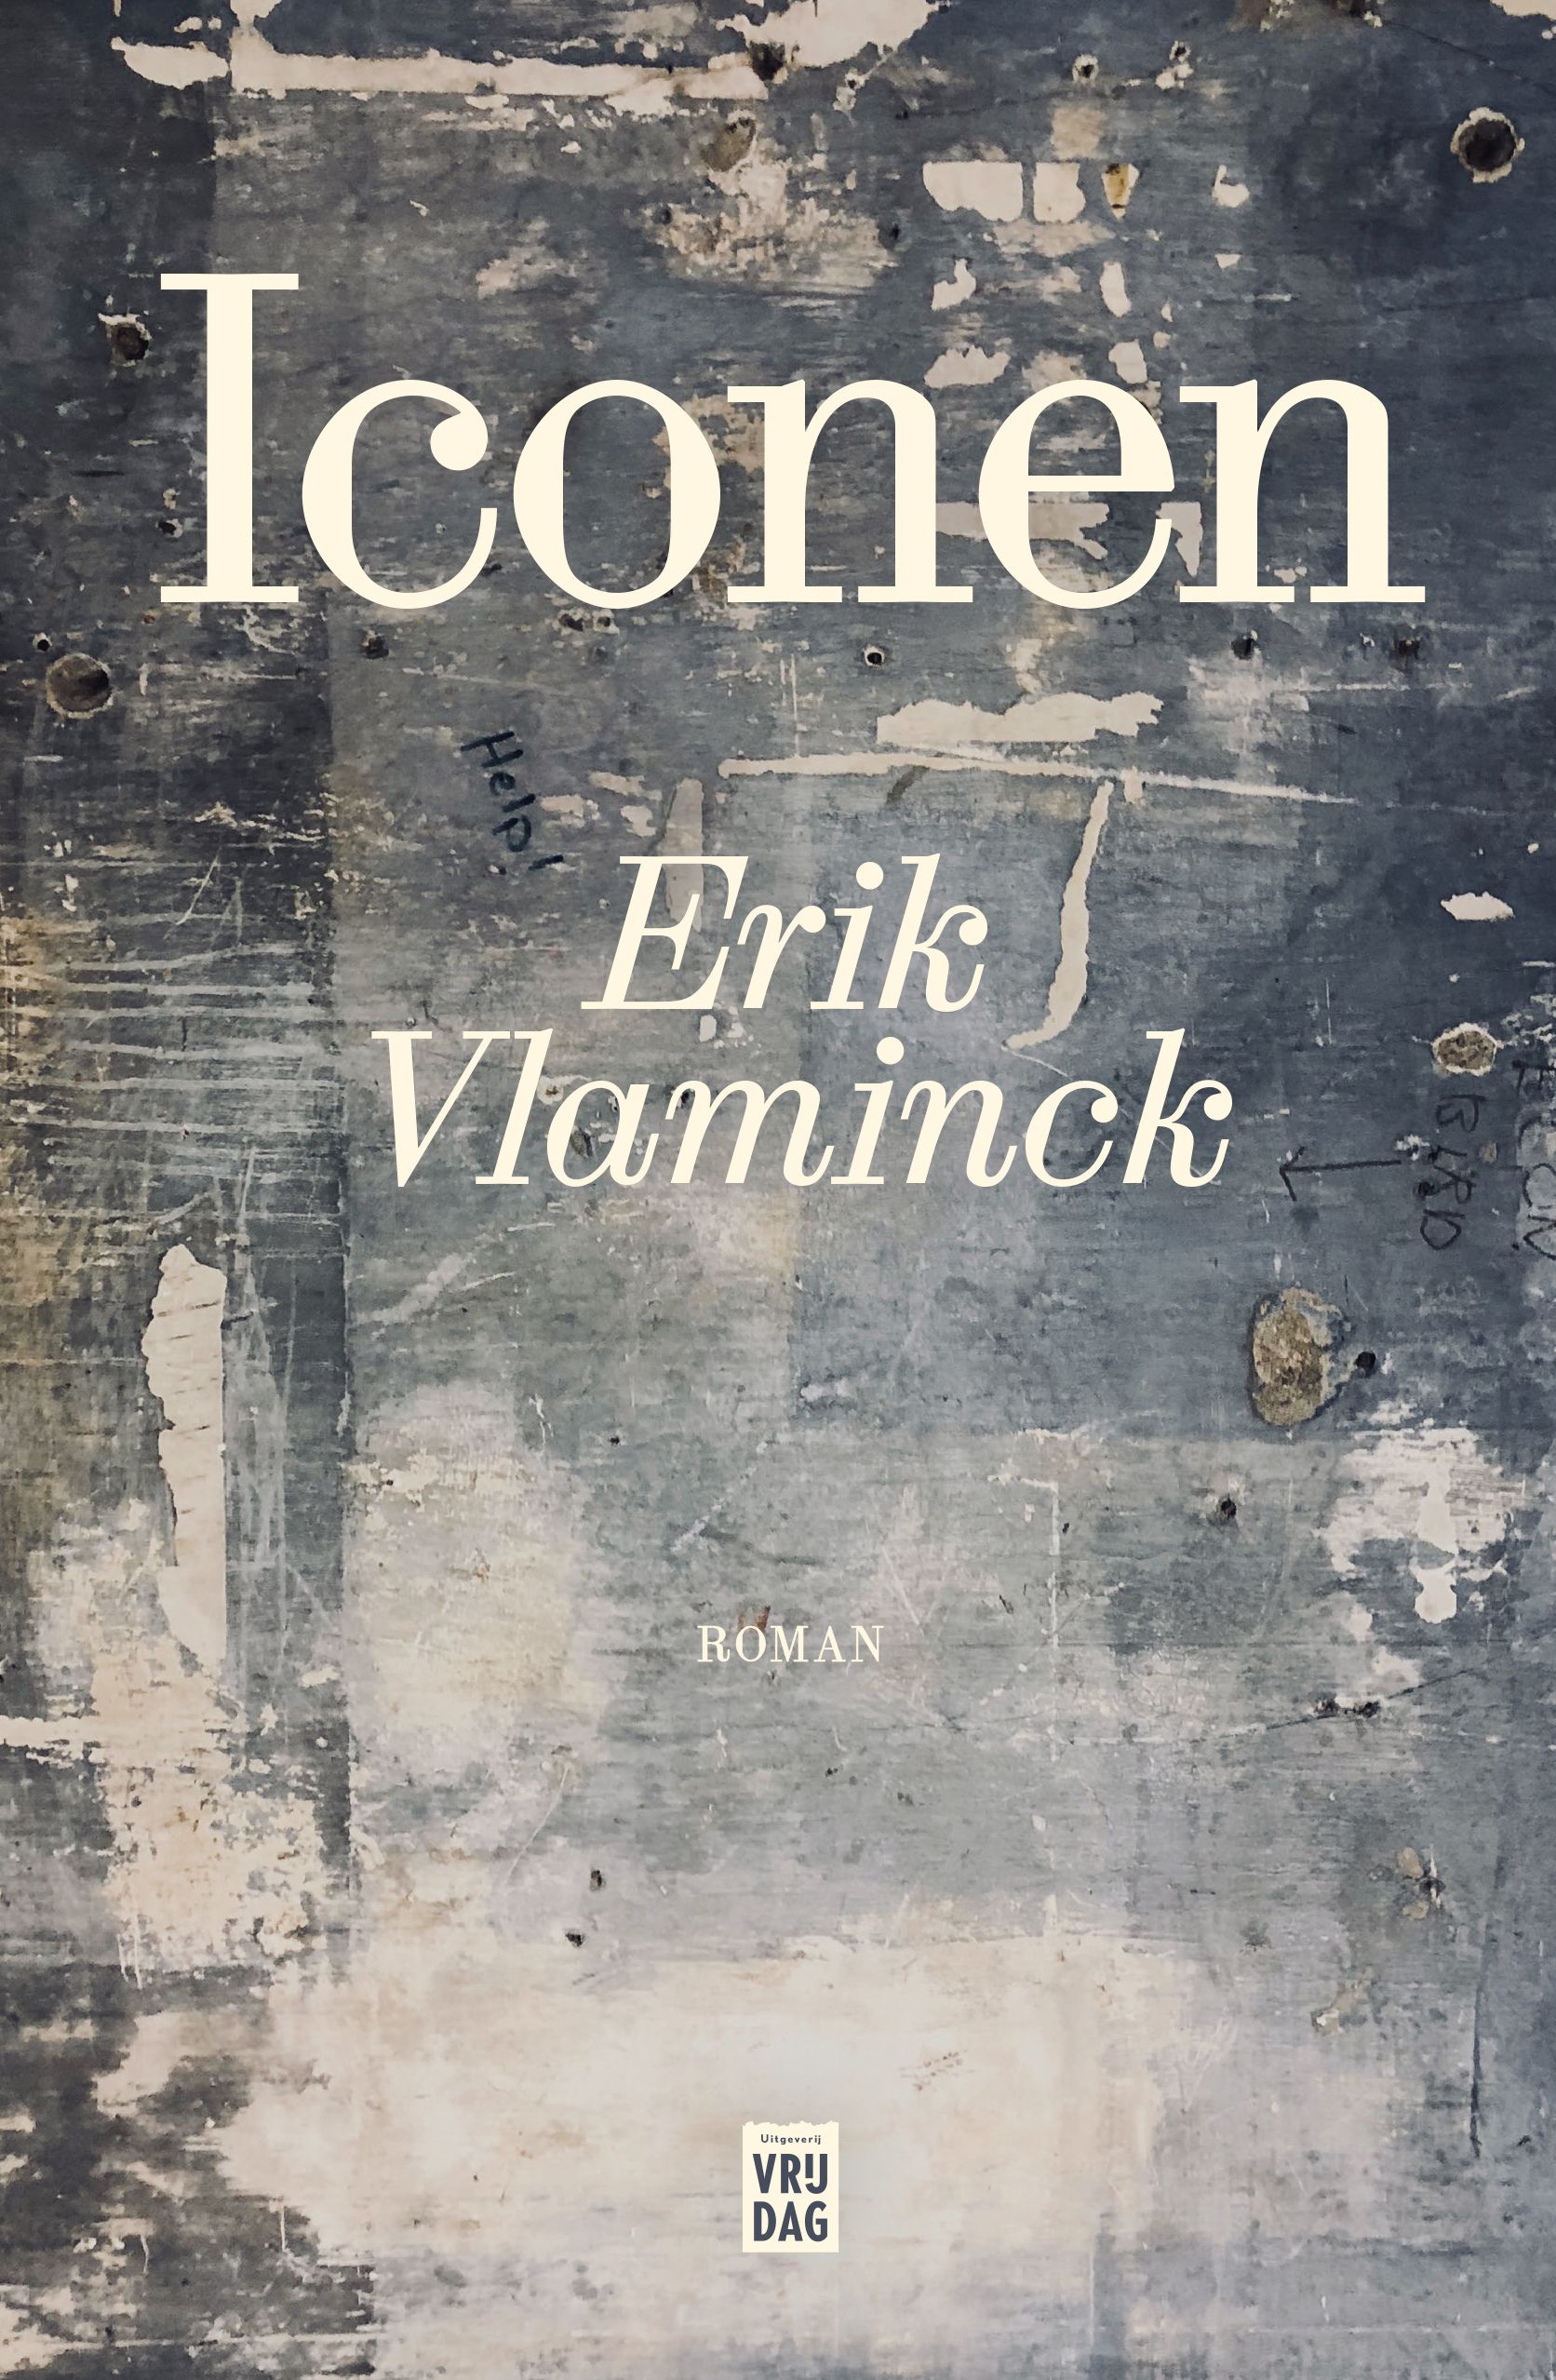 Vlaminck, Erik - Iconen